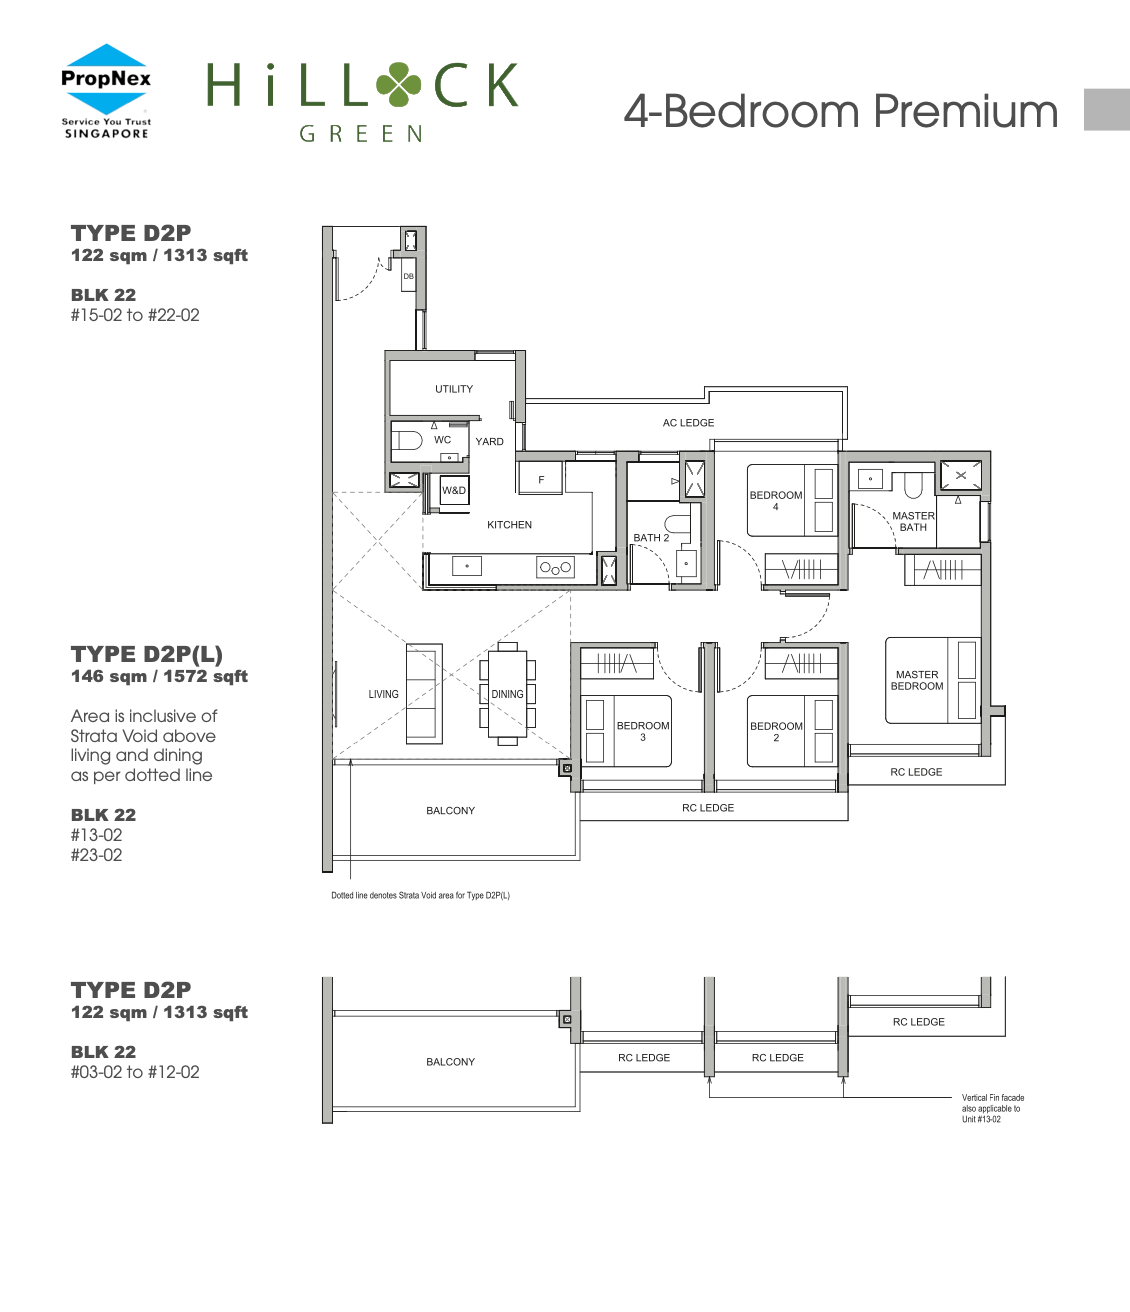 Hillock Green 4 Bedroom Premium Floor Plan